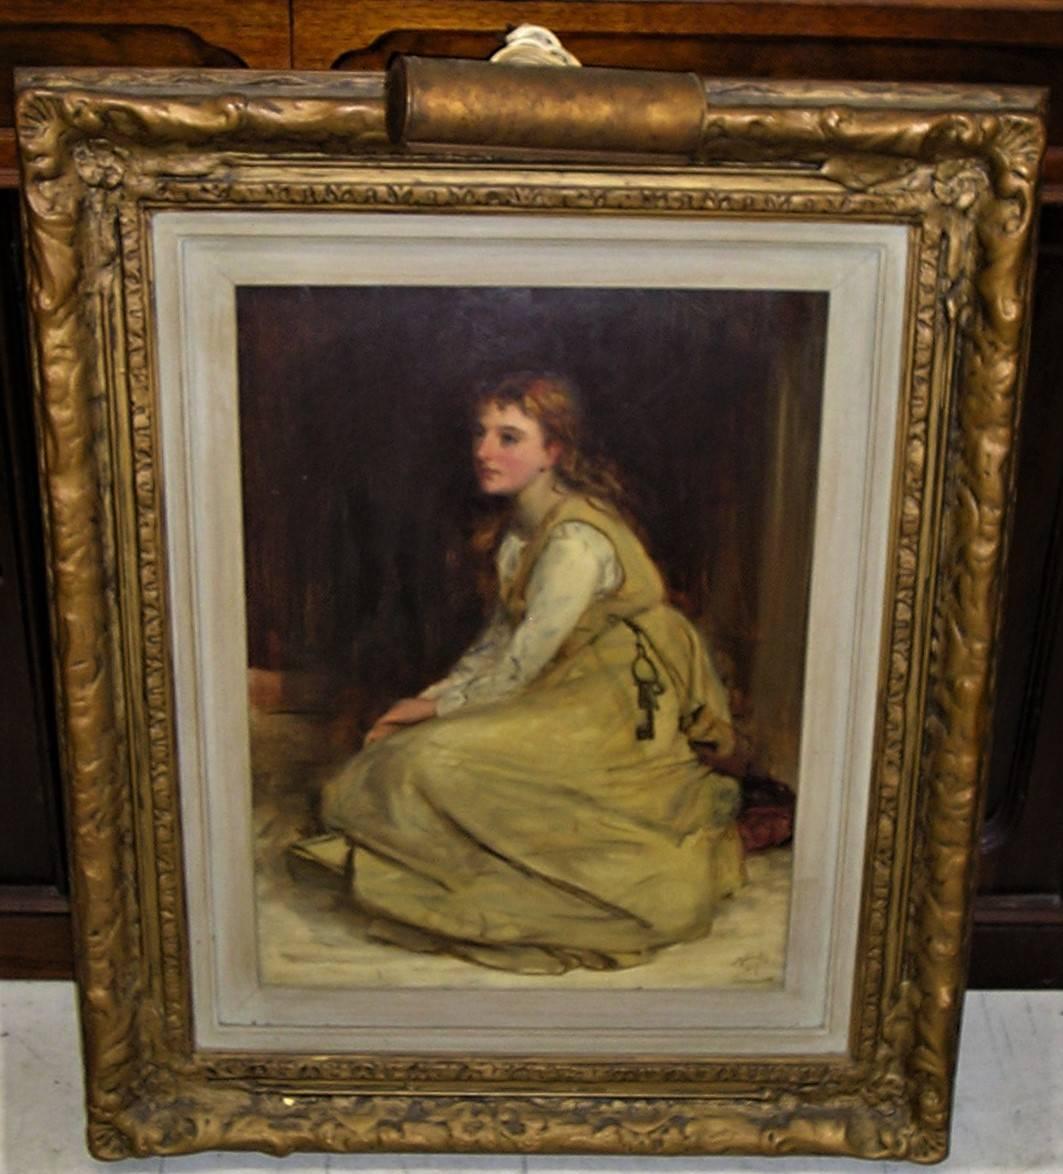 Robert Herdman (Schottland 1829-1888) Öl auf Karton.
Schön gerahmt von Robert Herdman mit der Darstellung einer Frau, die mit einem Schlüssel sitzt.
Maße: Größe ohne Rahmen 17,5